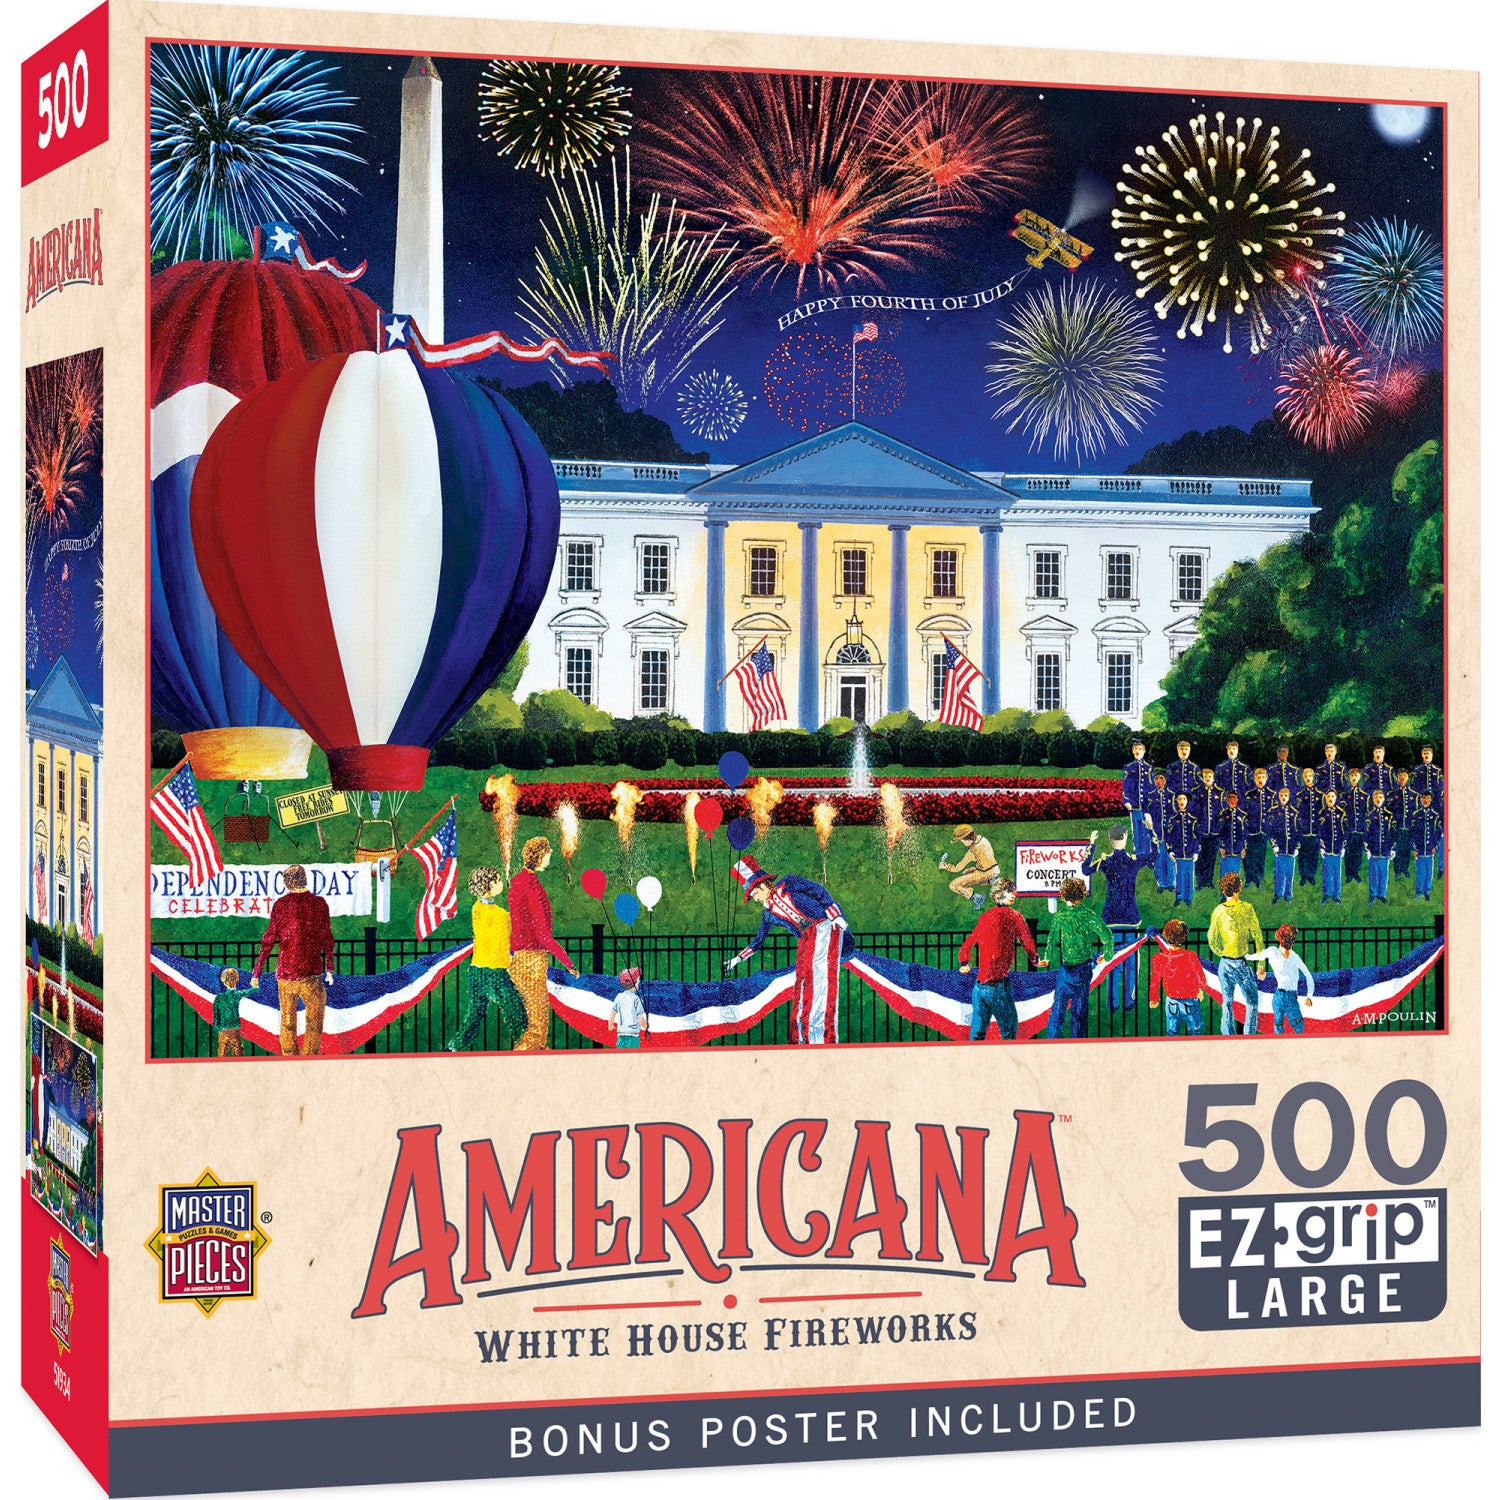 Americana - White House Fireworks 500 Piece EZ Grip Jigsaw Puzzle